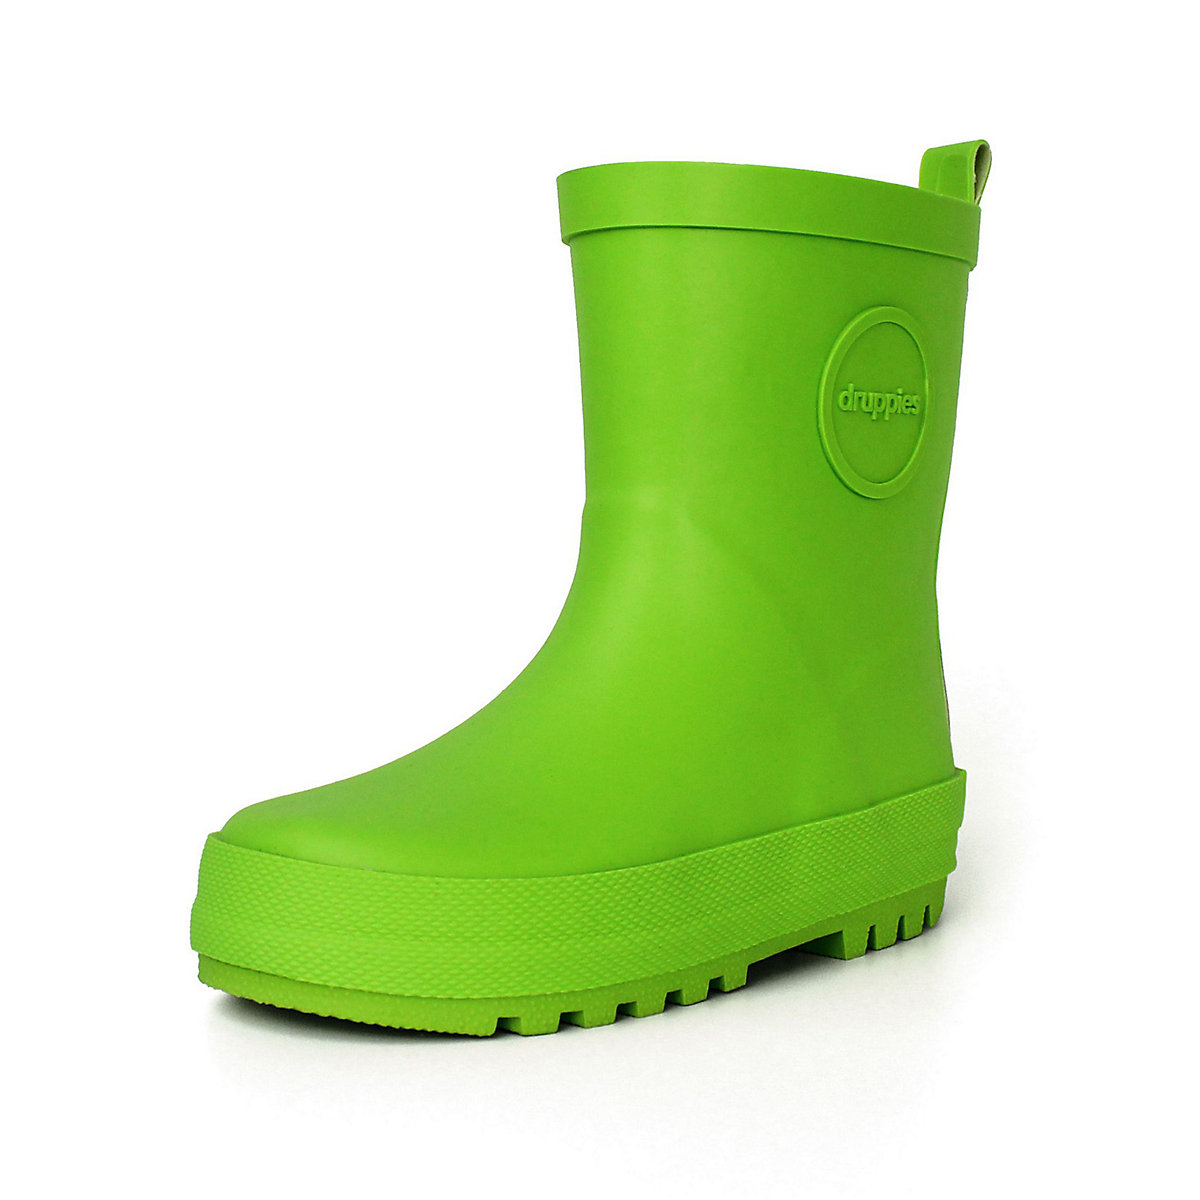 druppies ® Regenstiefel Adventure Stiefel grün